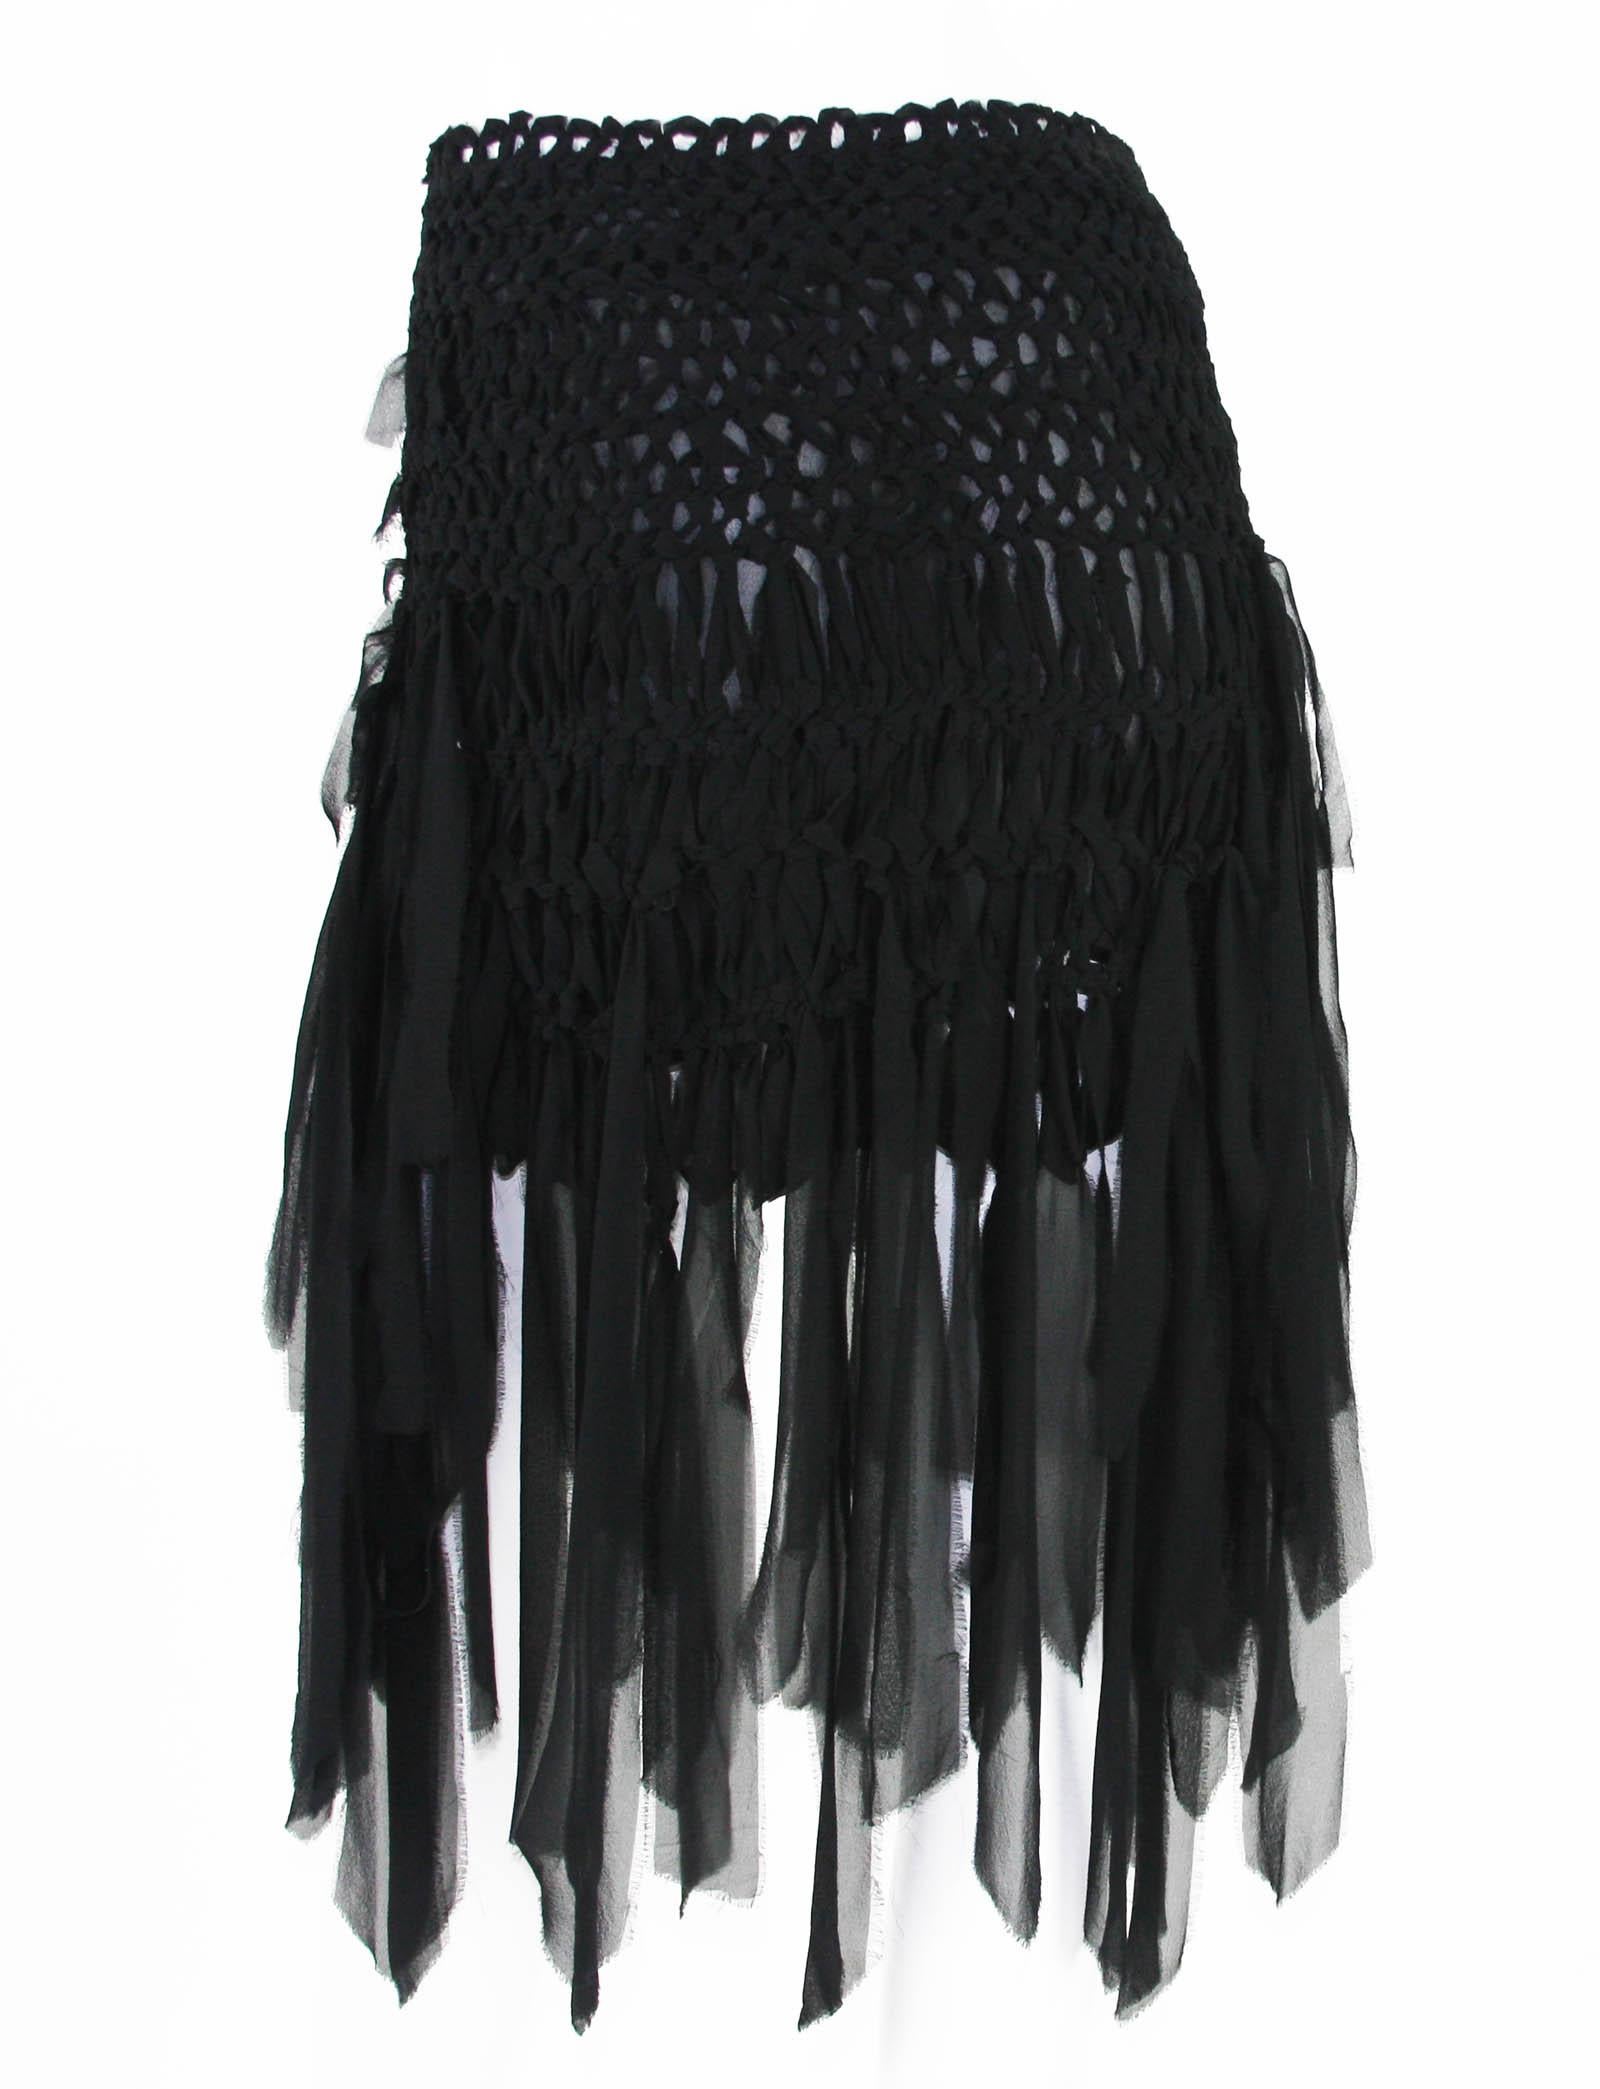 Tom Ford for Yves Saint Laurent Mini Black Silk Woven Fringe Skirt, S / S 2002 3